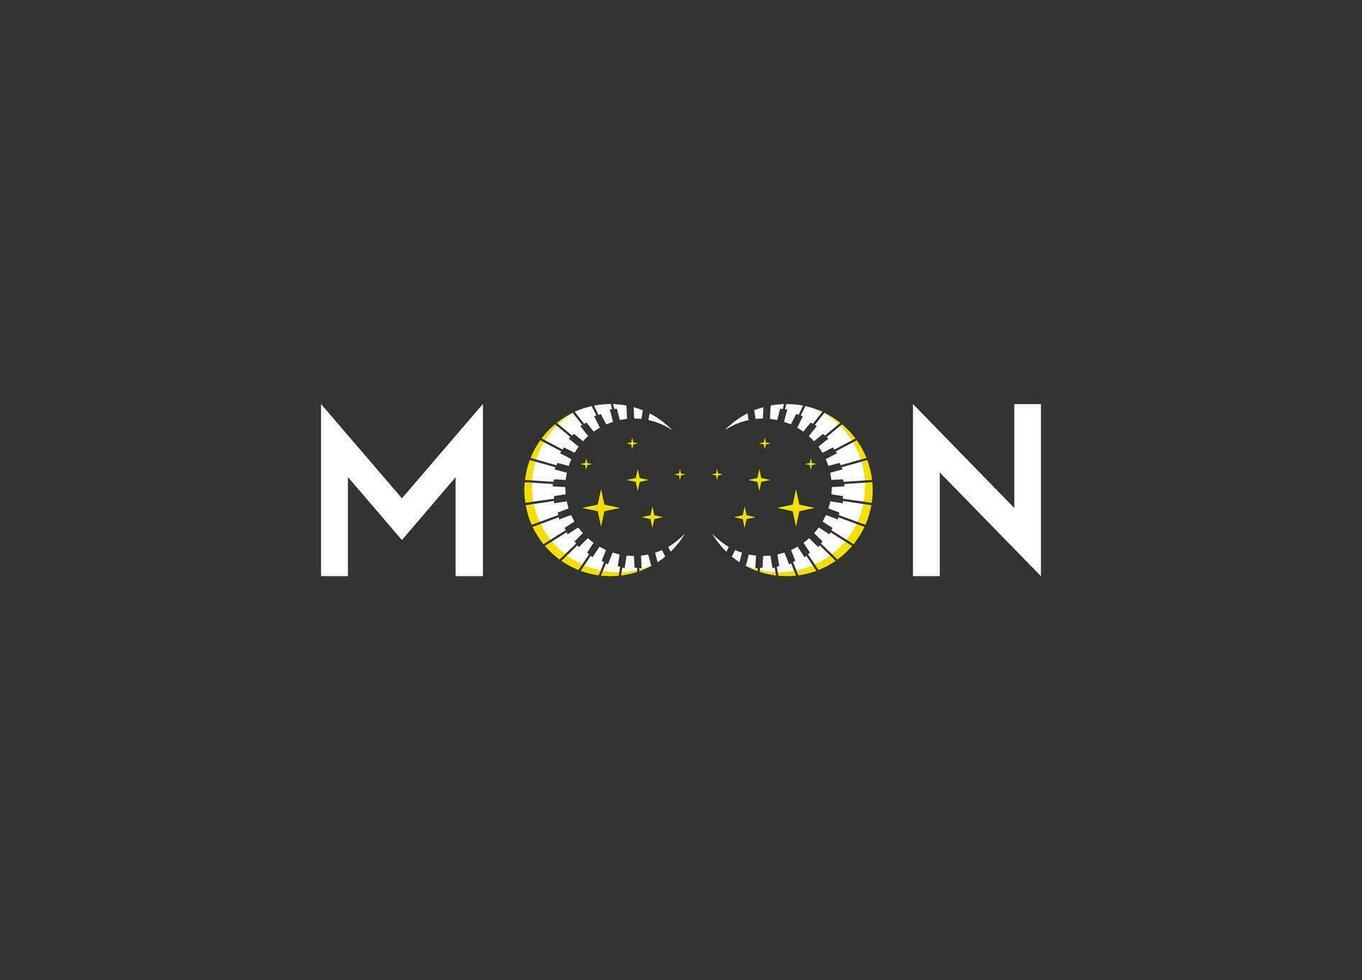 Luna logo diseño gratis modelo vector